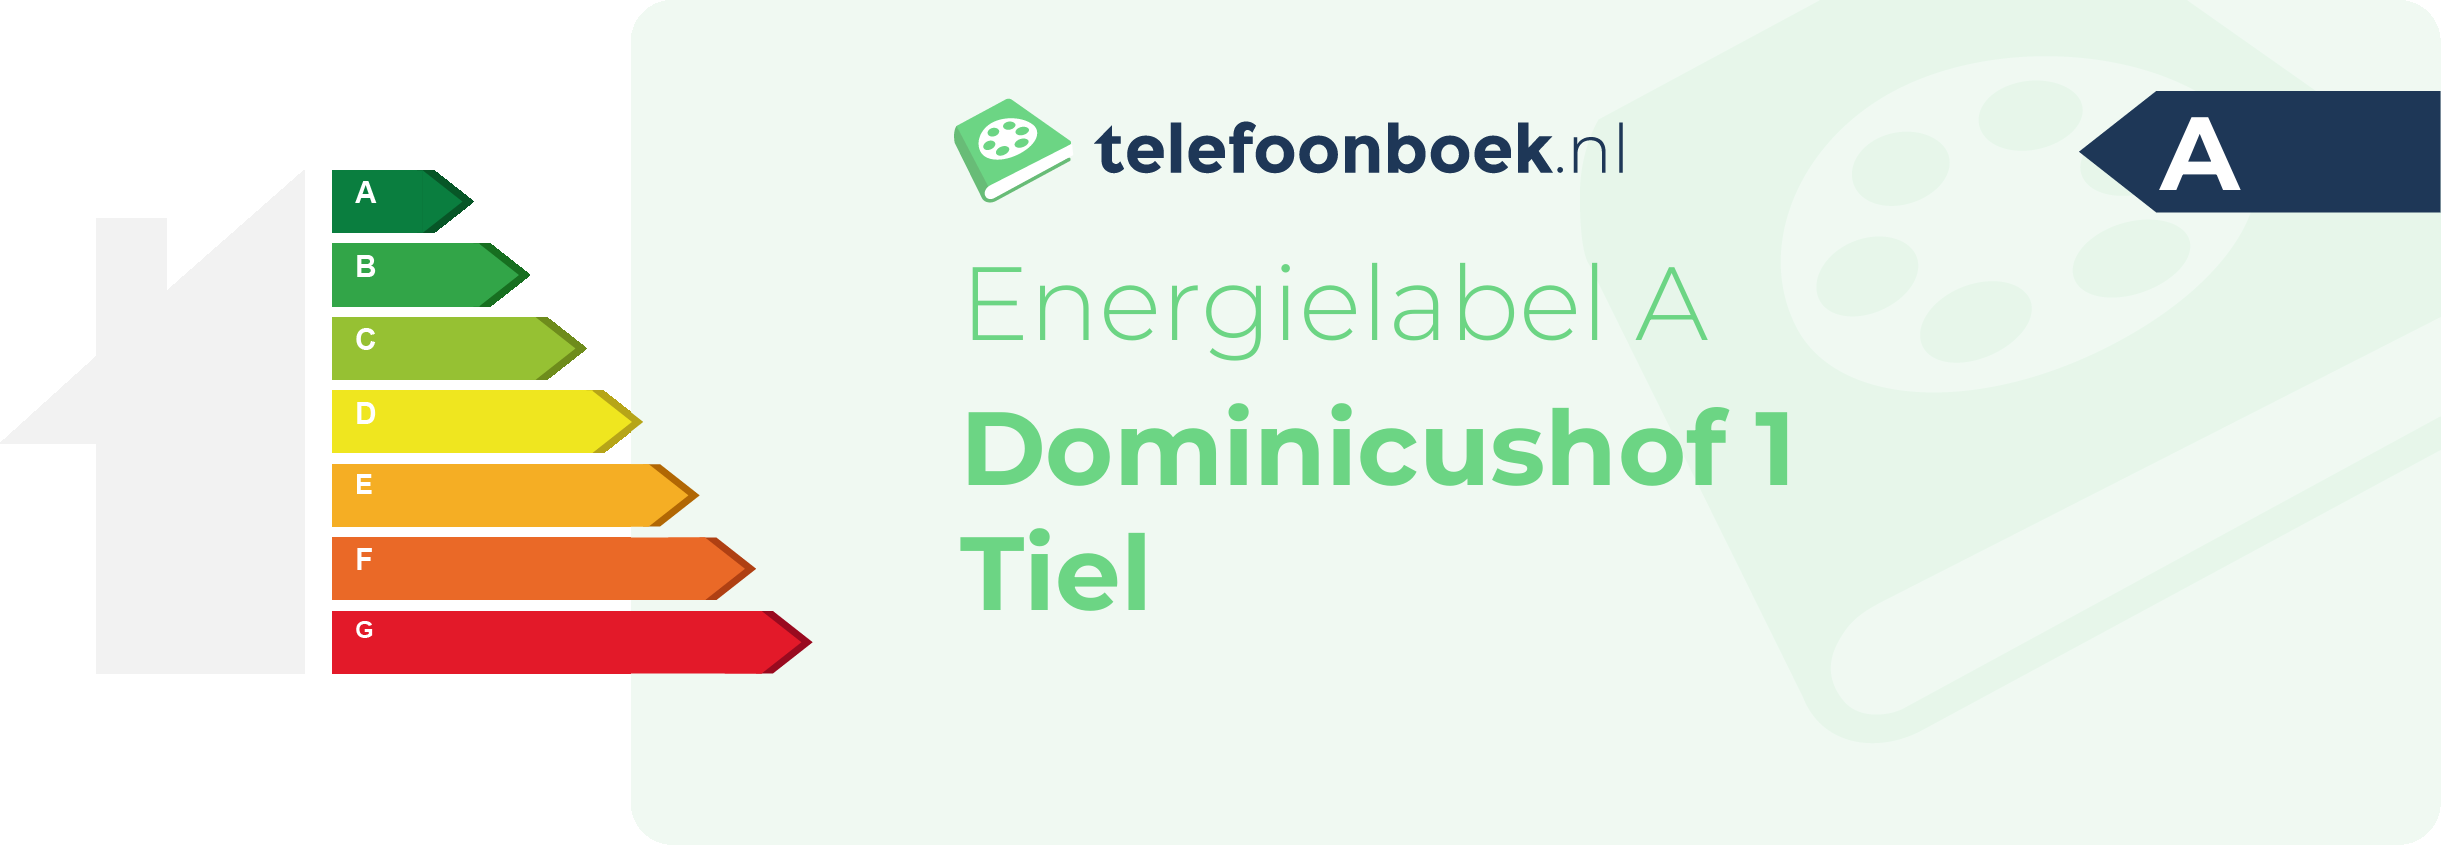 Energielabel Dominicushof 1 Tiel